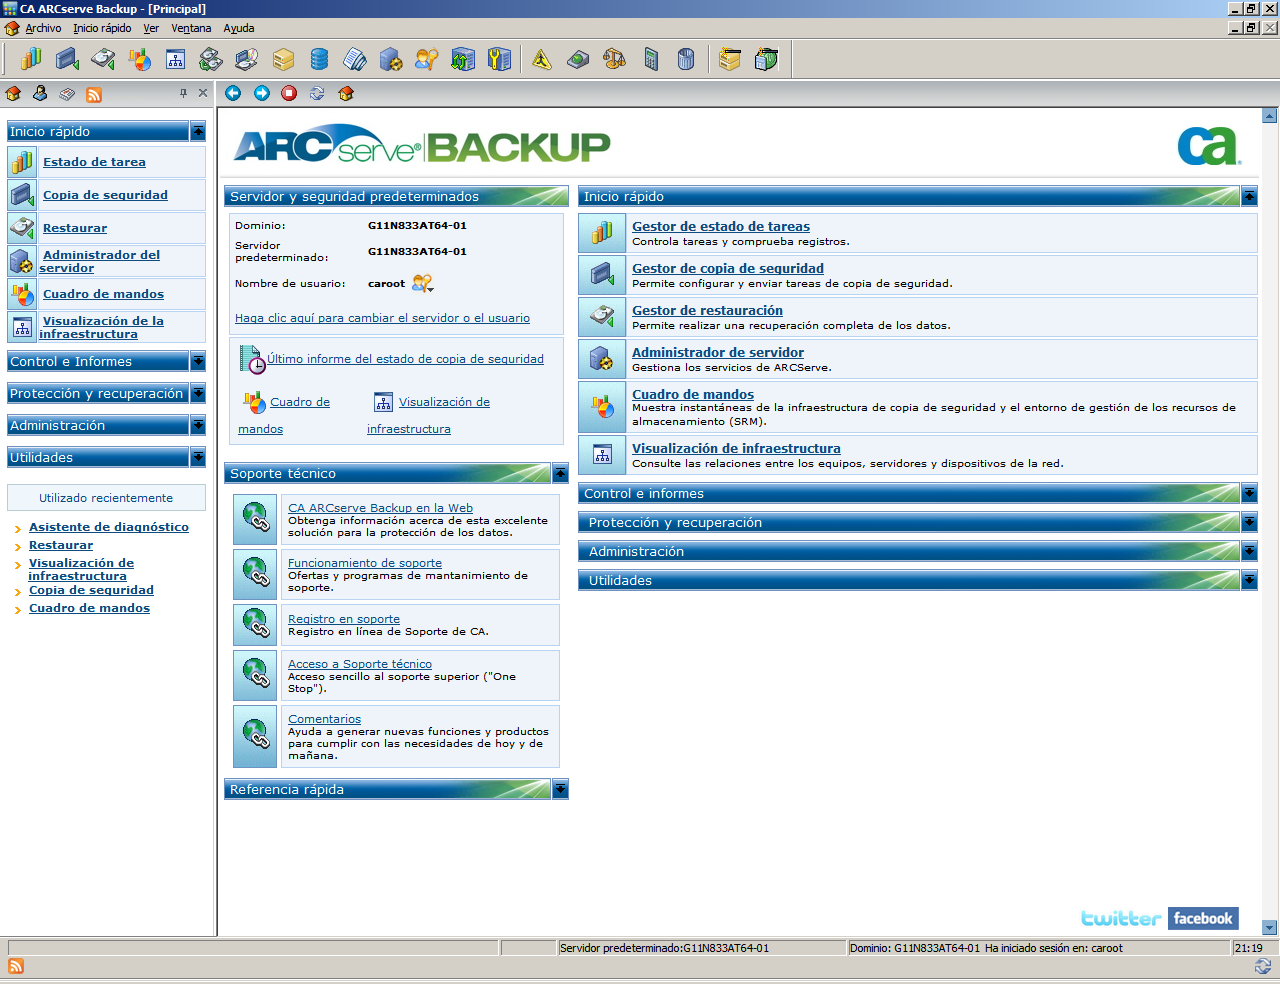 Página principal de CA ARCserve Backup Página principal de CA ARCserve Backup La página principal es la ubicación central desde la cual puede iniciar sesión en otros servidores de CA ARCserve Backup